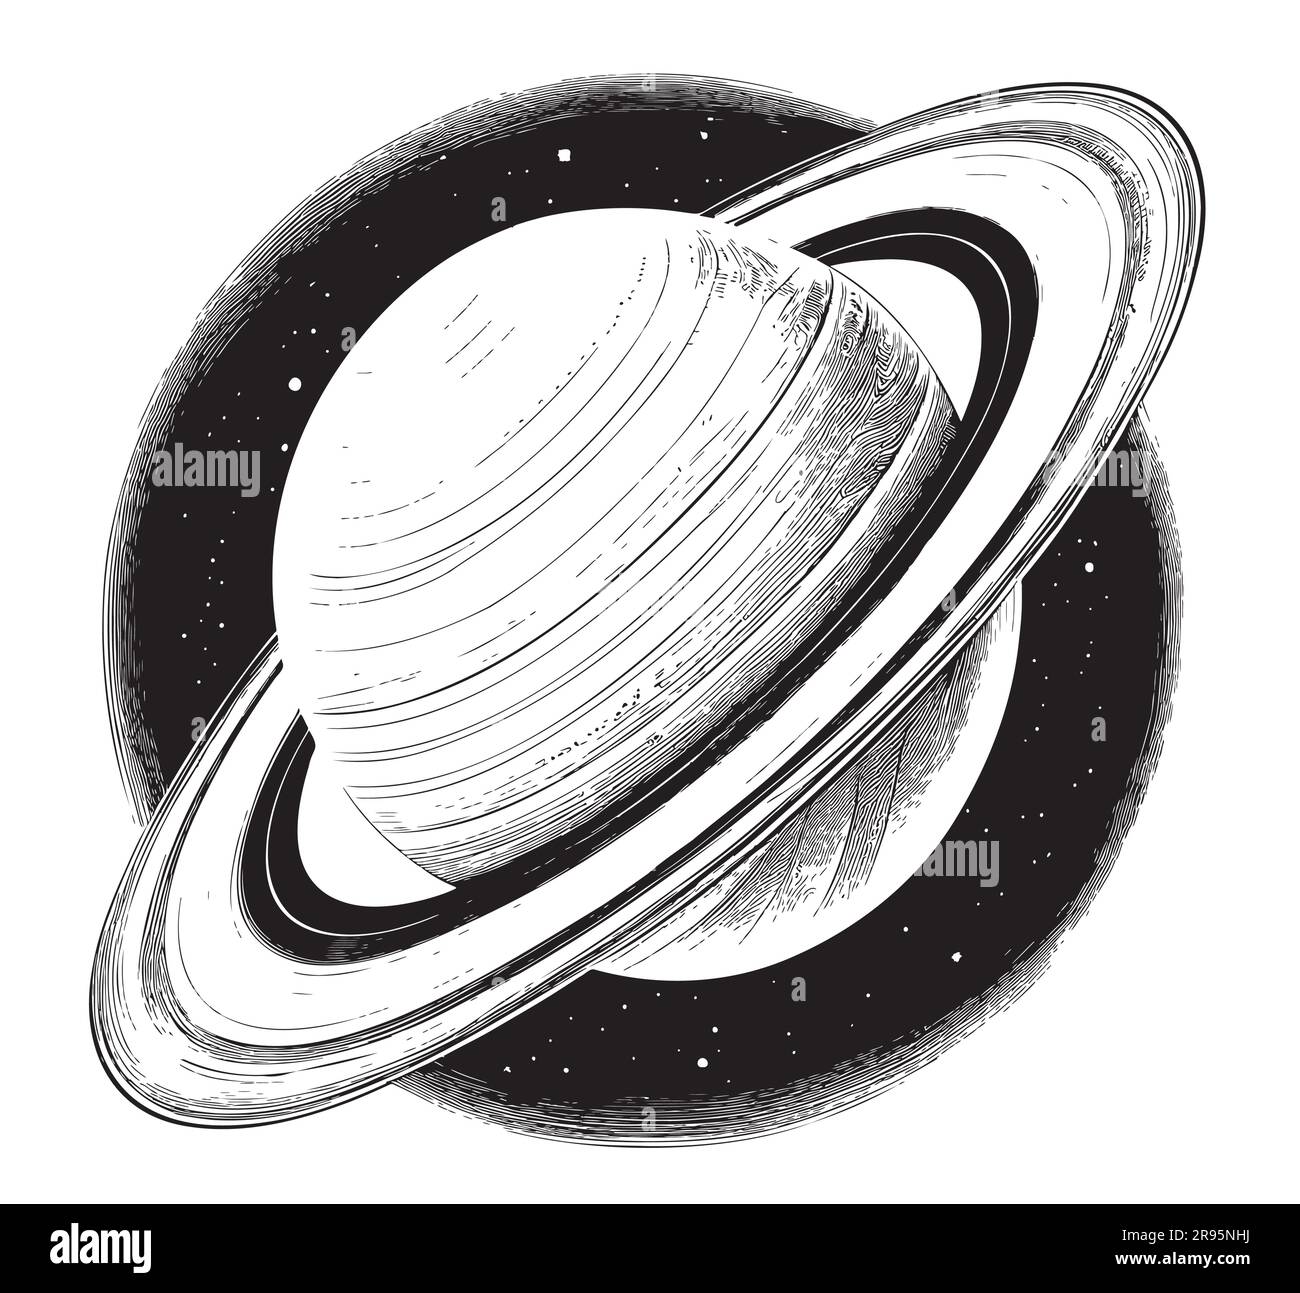 Dessin de Planet Saturn dessiné à la main dans l'illustration de style Doodle Cosmos Illustration de Vecteur